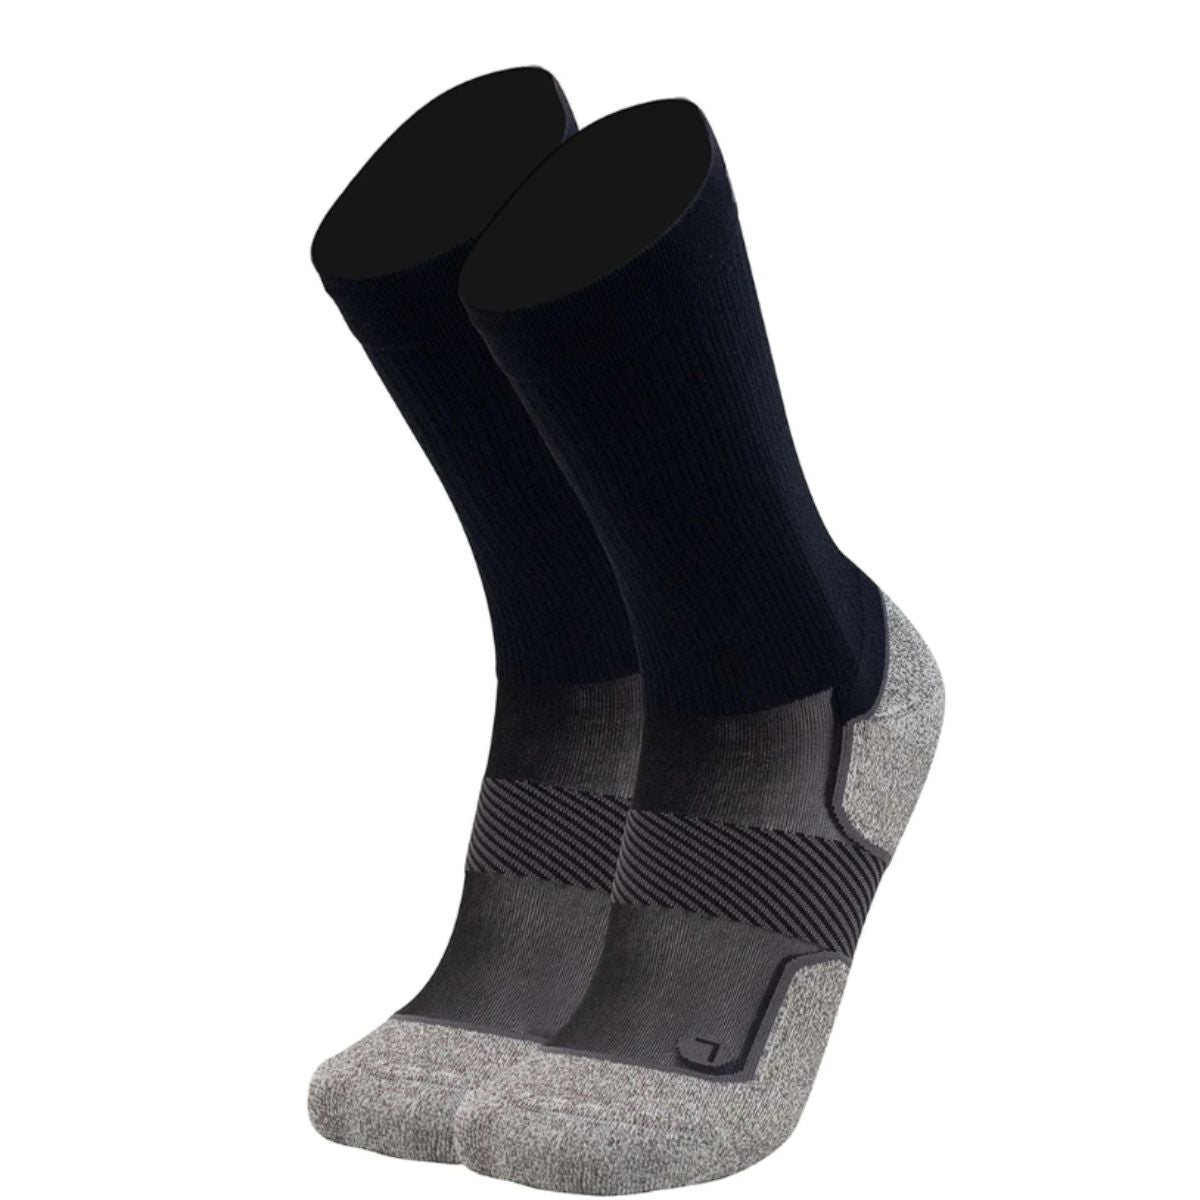 Active Comfort Socks - Crew